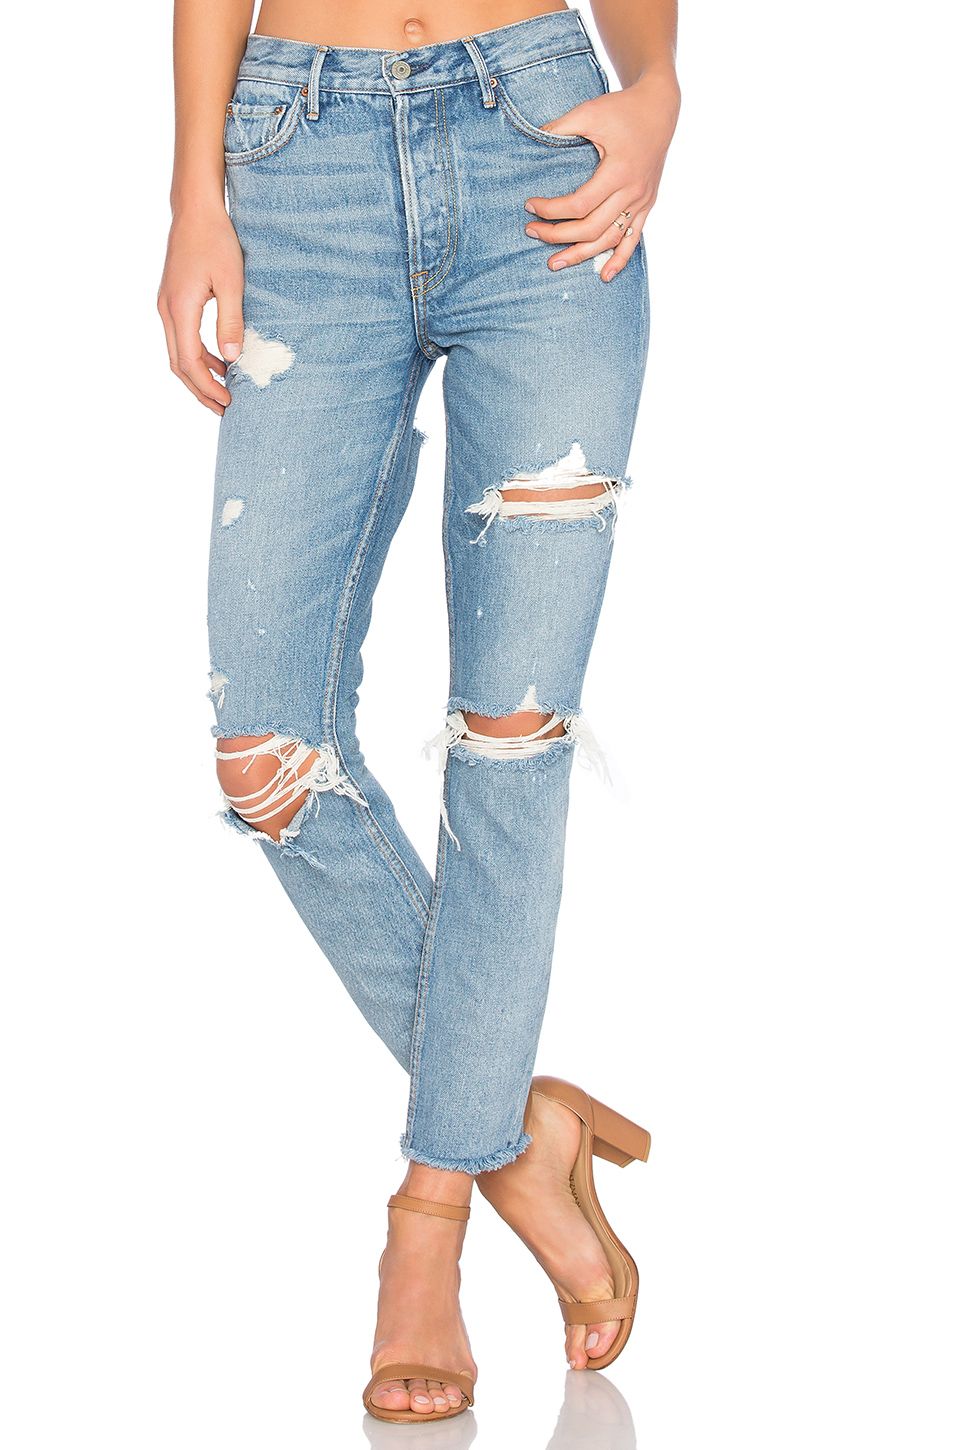 He aquí cómo conseguir el look de jeans rotos de Kylie